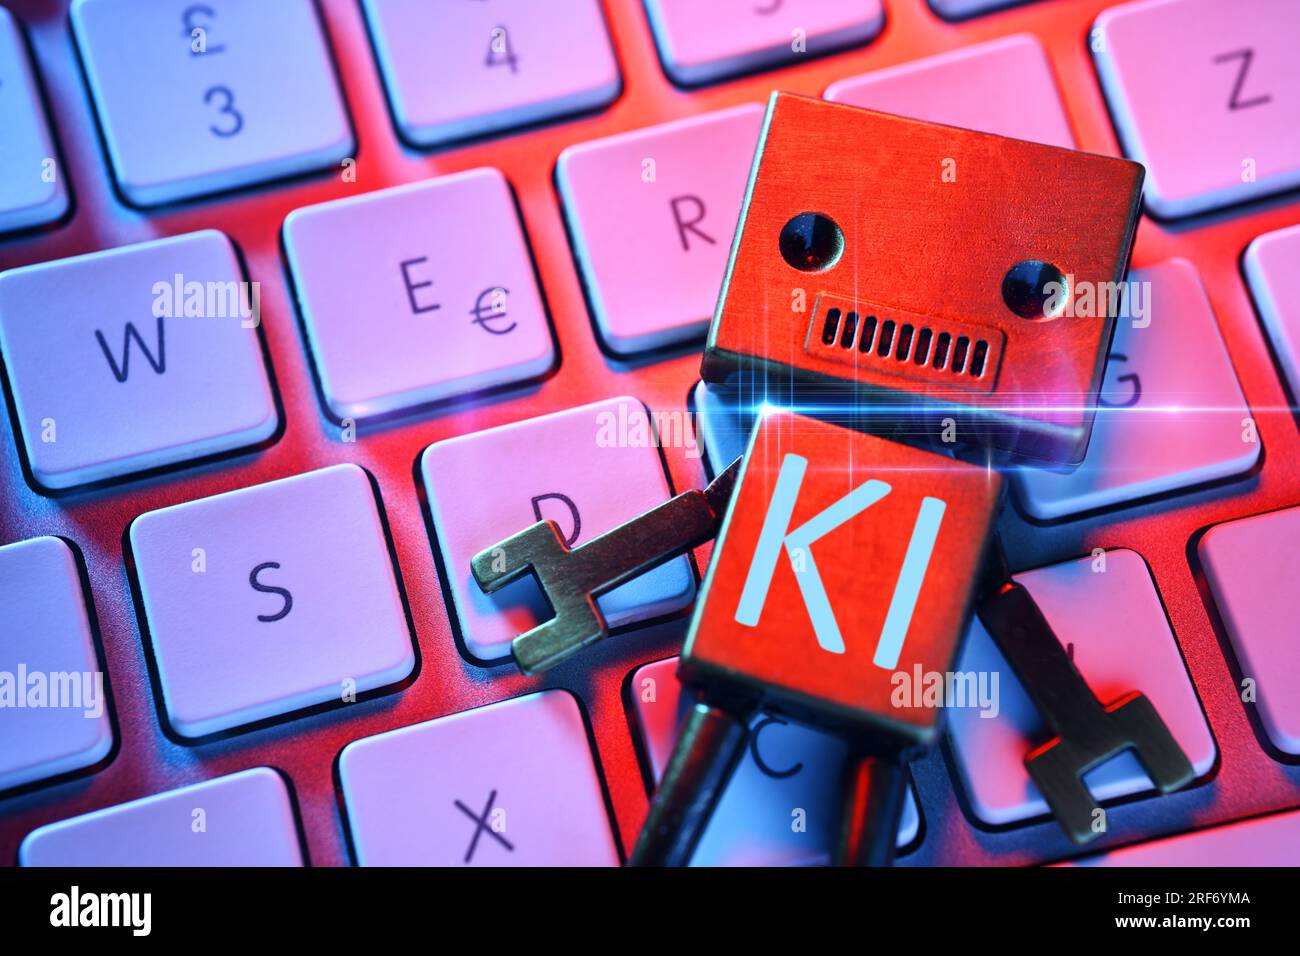 FOTOMONTAGE, Roboterfigur auf einer Computertastatur mit Aufschrift KI, Symbolfoto Künstliche Intelligenz Stock Photo